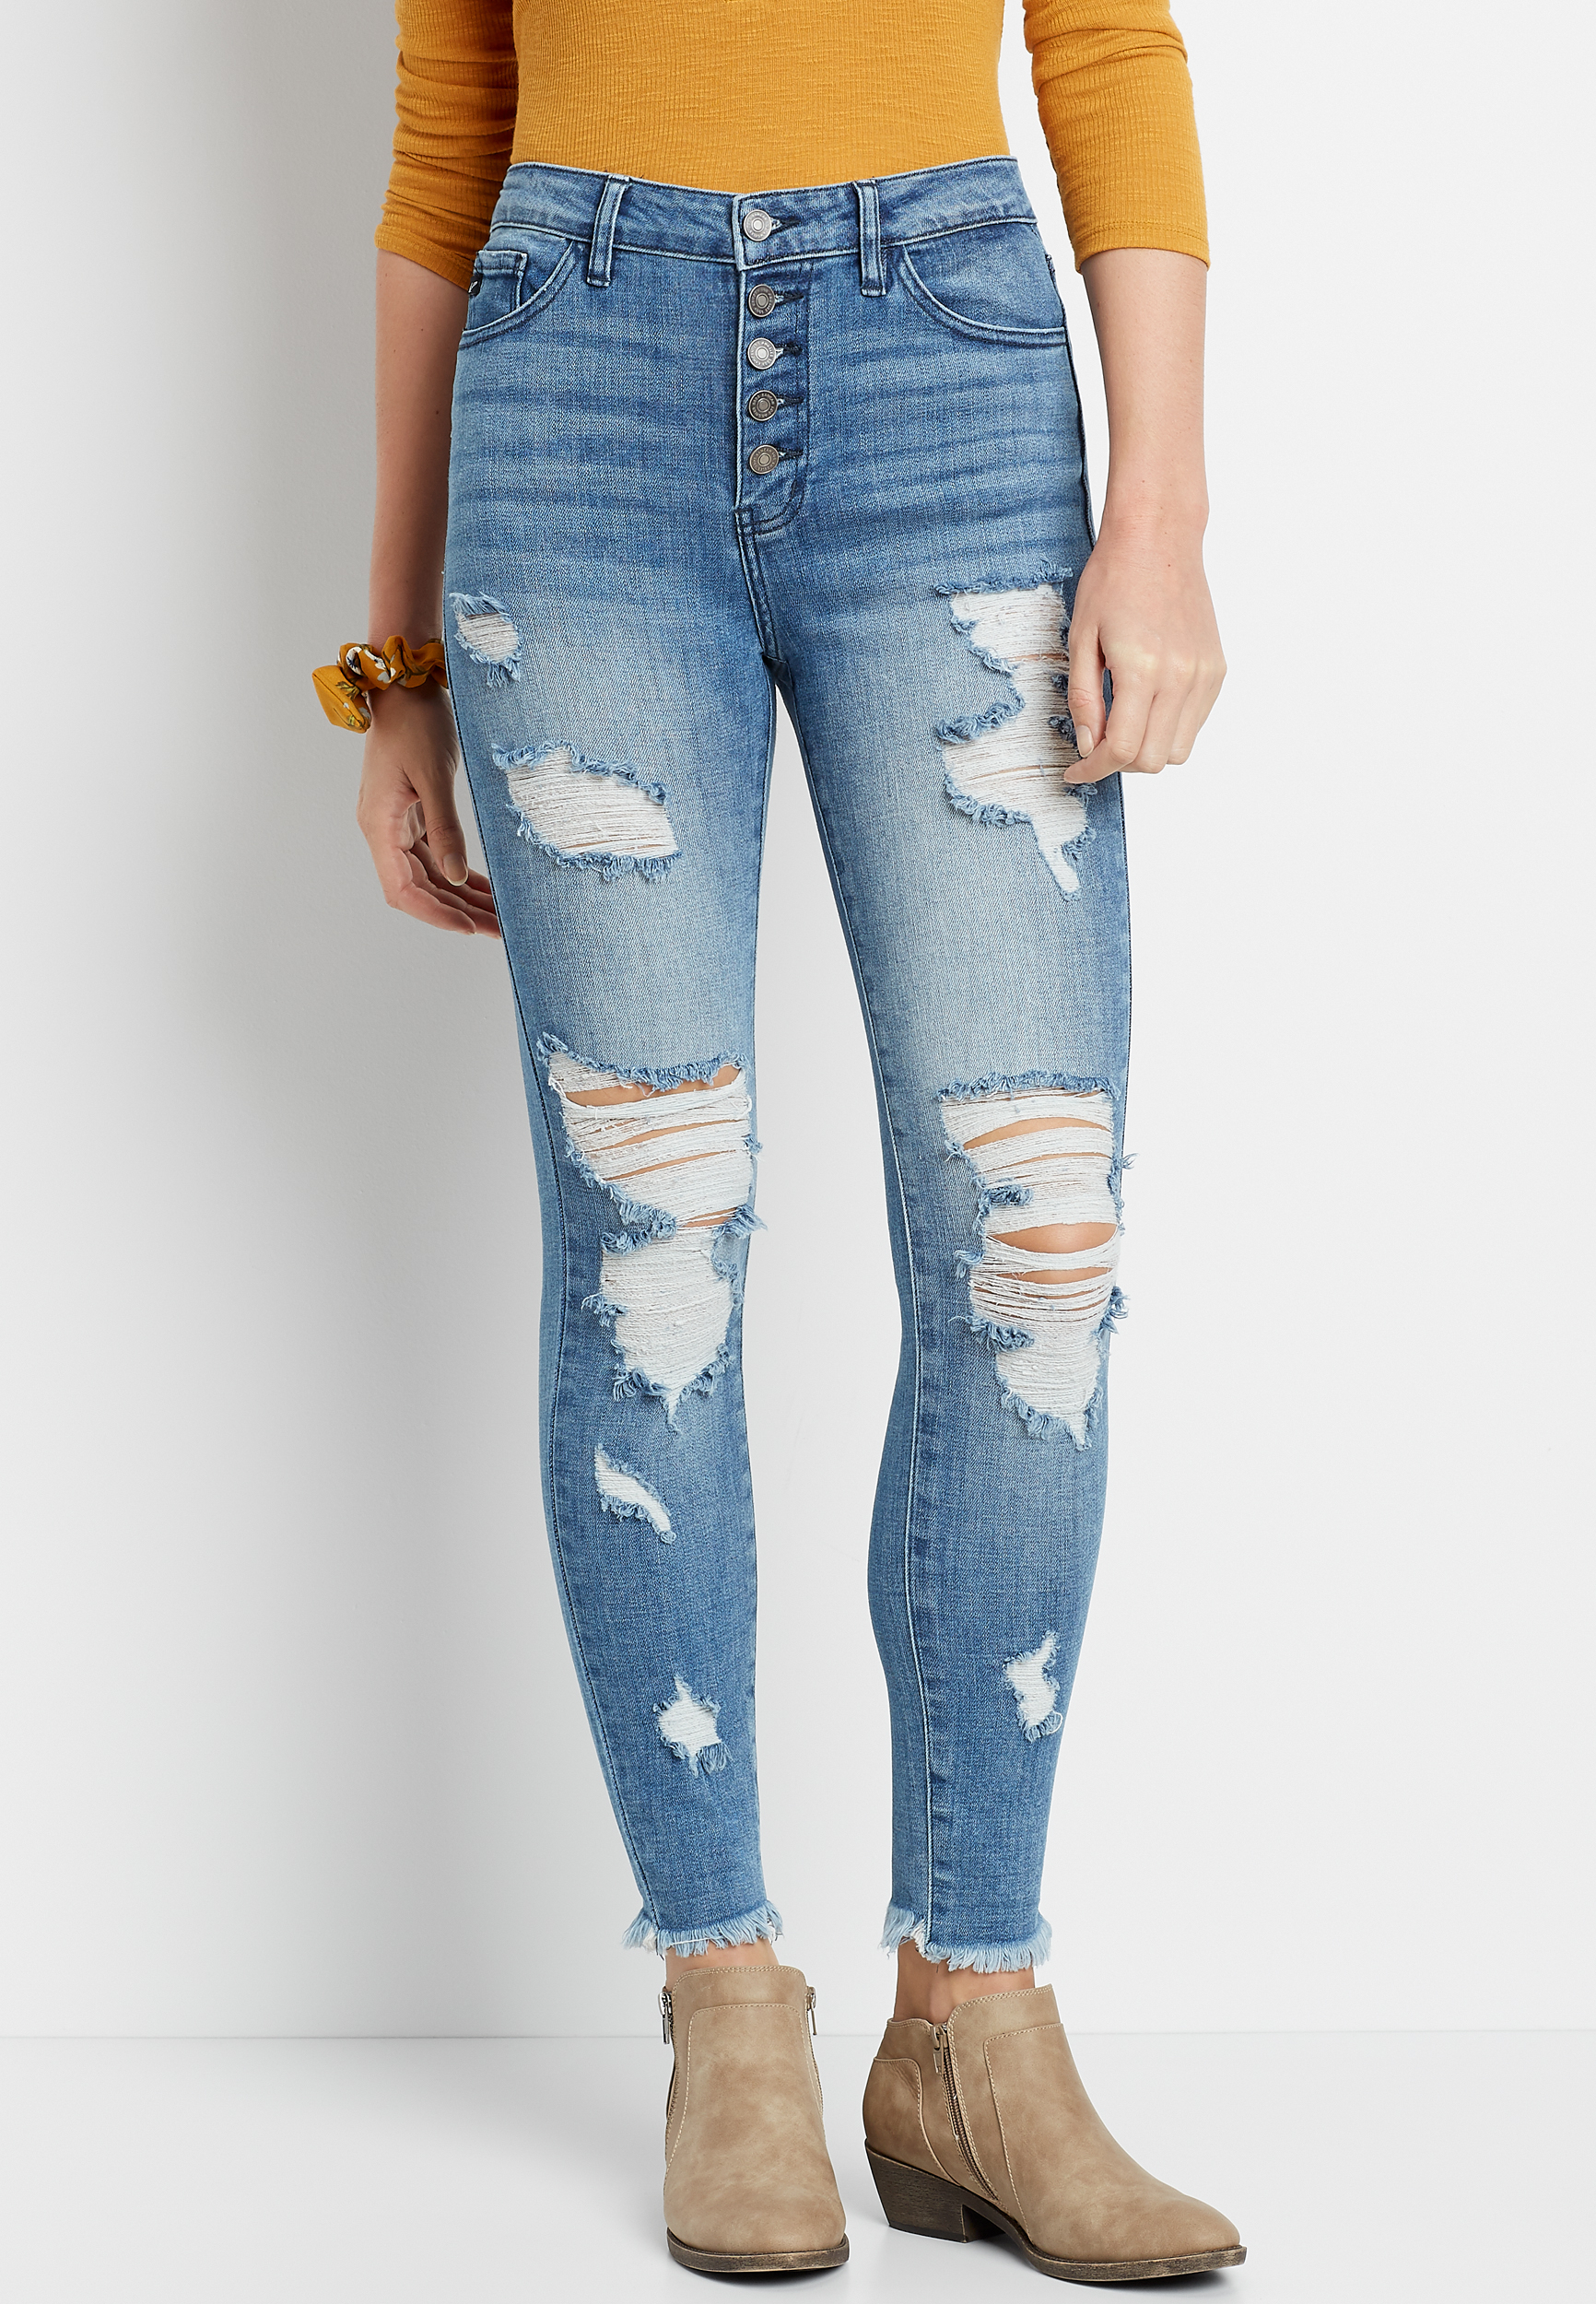 kancans jeans